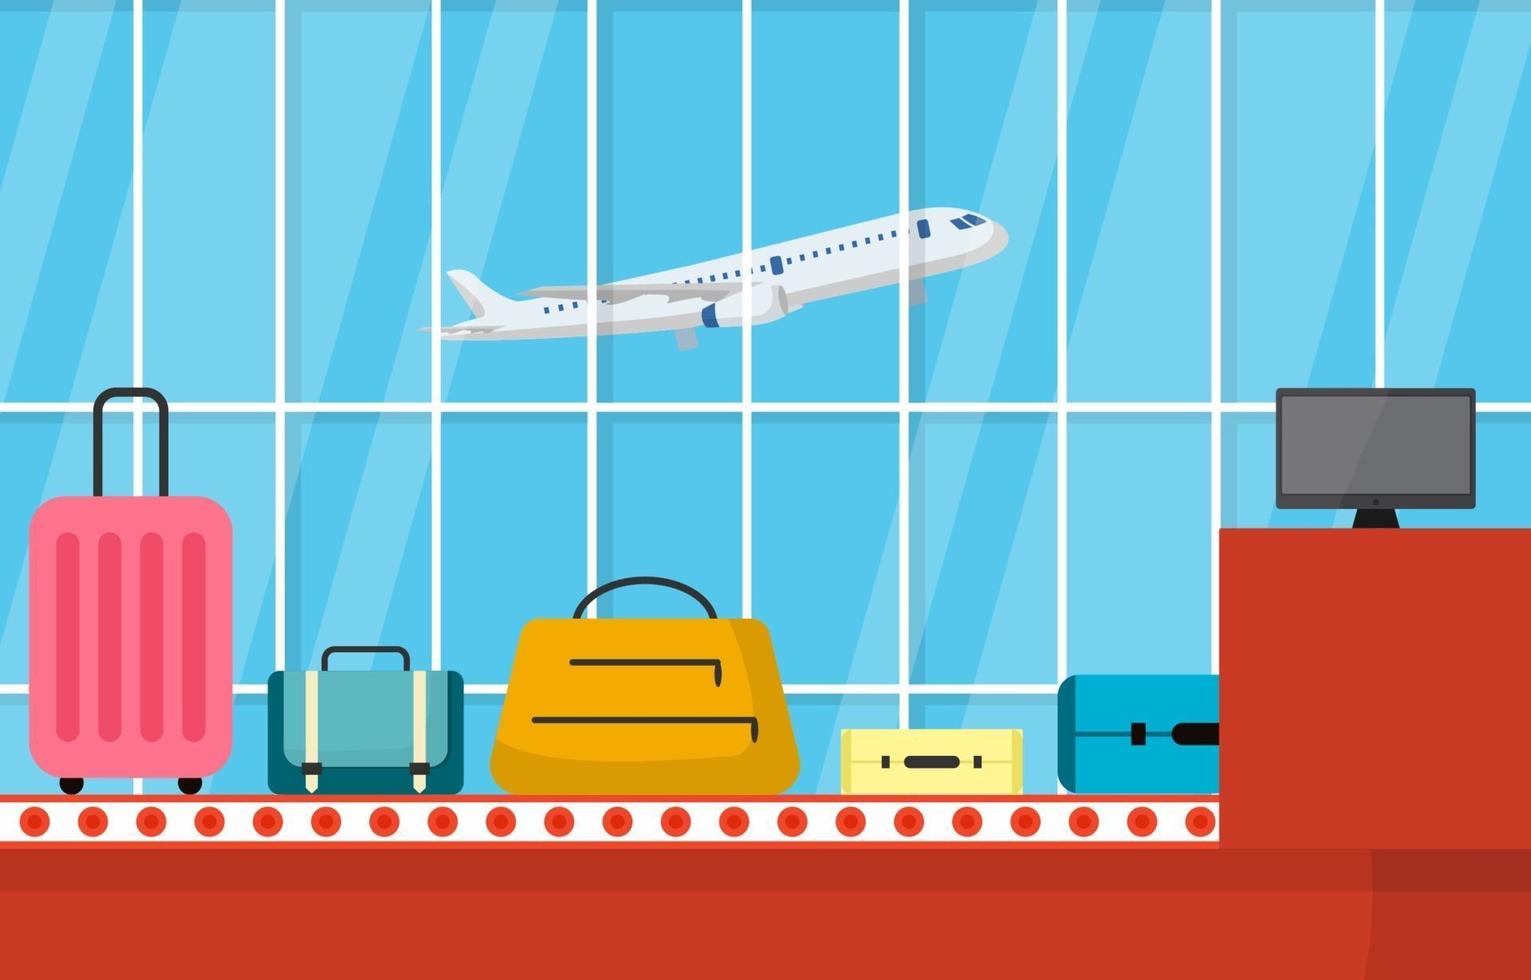 aeropuerto, avión, terminal, puerta, transportador, vestíbulo, llegada, interior, plano, ilustración vector